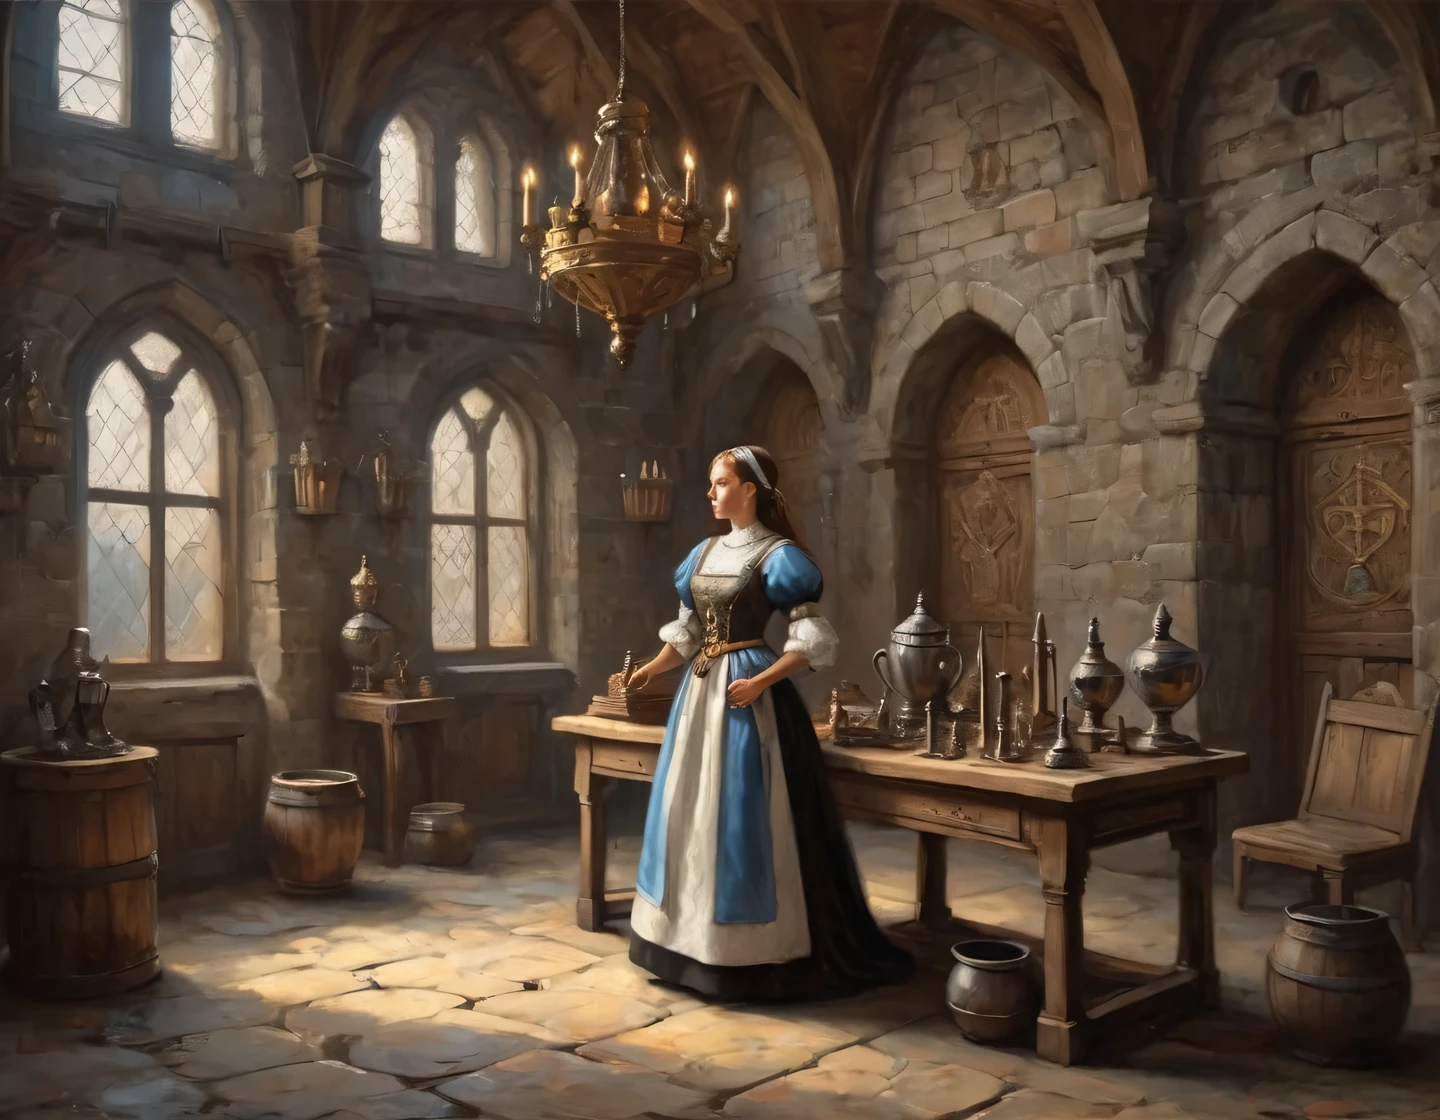 Una fotografía antigua, una chica cyborg vestida de sirvienta está construyendo en el salón de un castillo medieval, muebles medievales, trofeos y armas en las paredes, heráldica, Realista